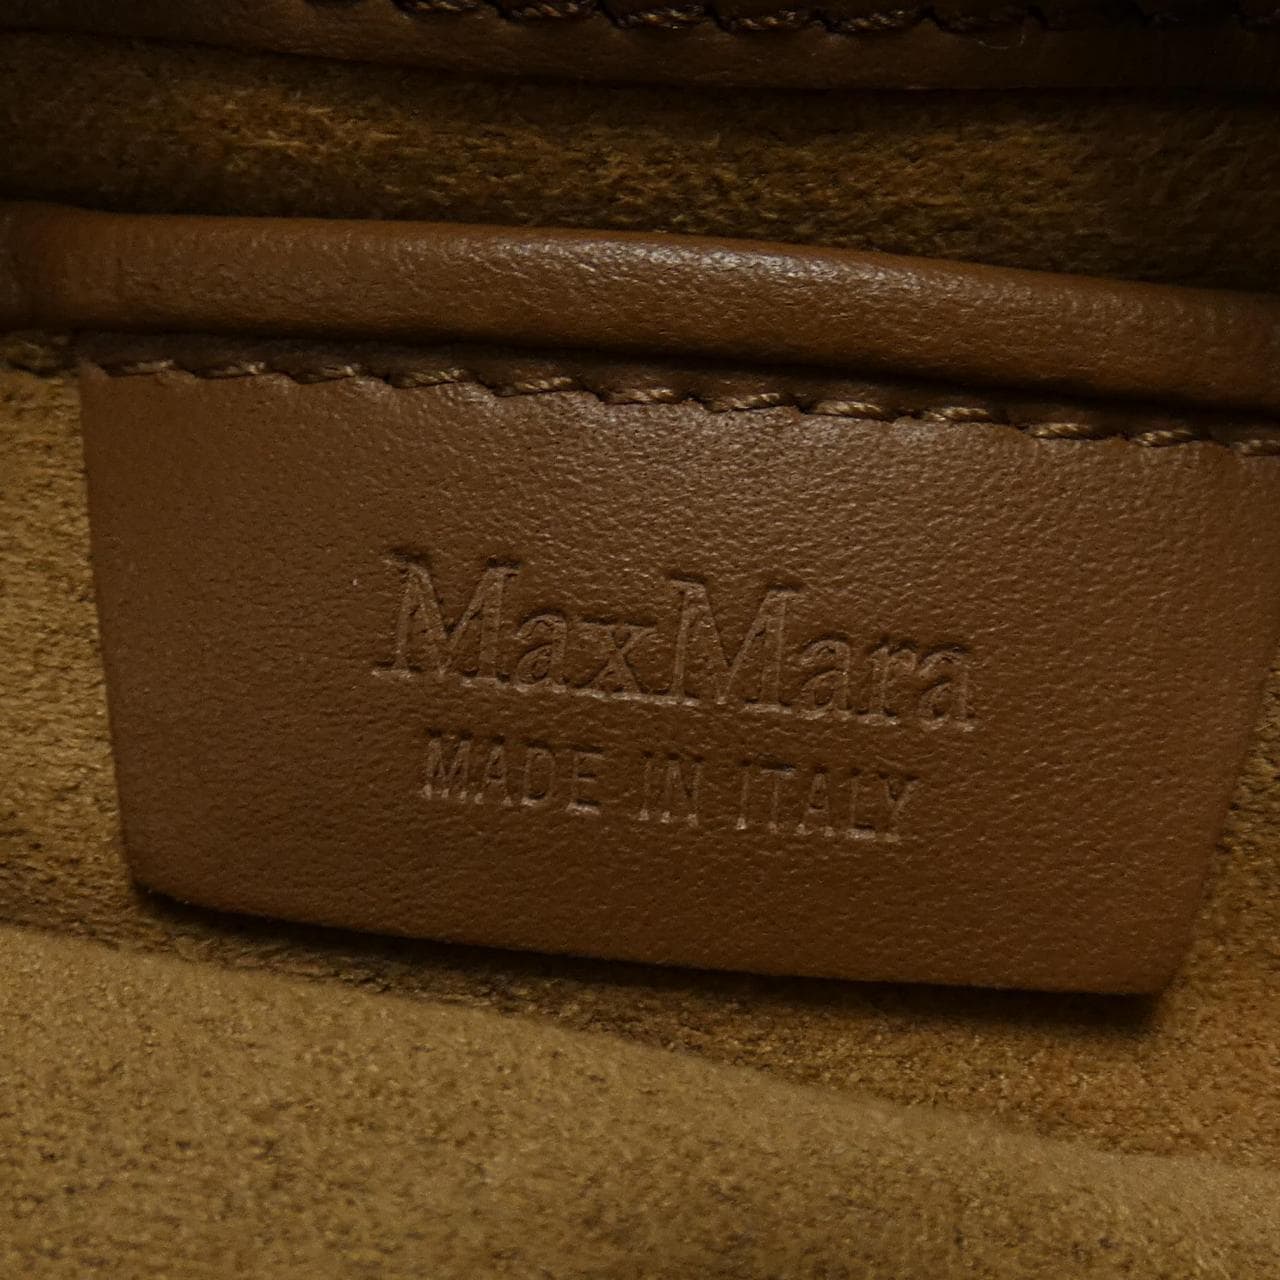 マックスマーラ Max Mara BAG